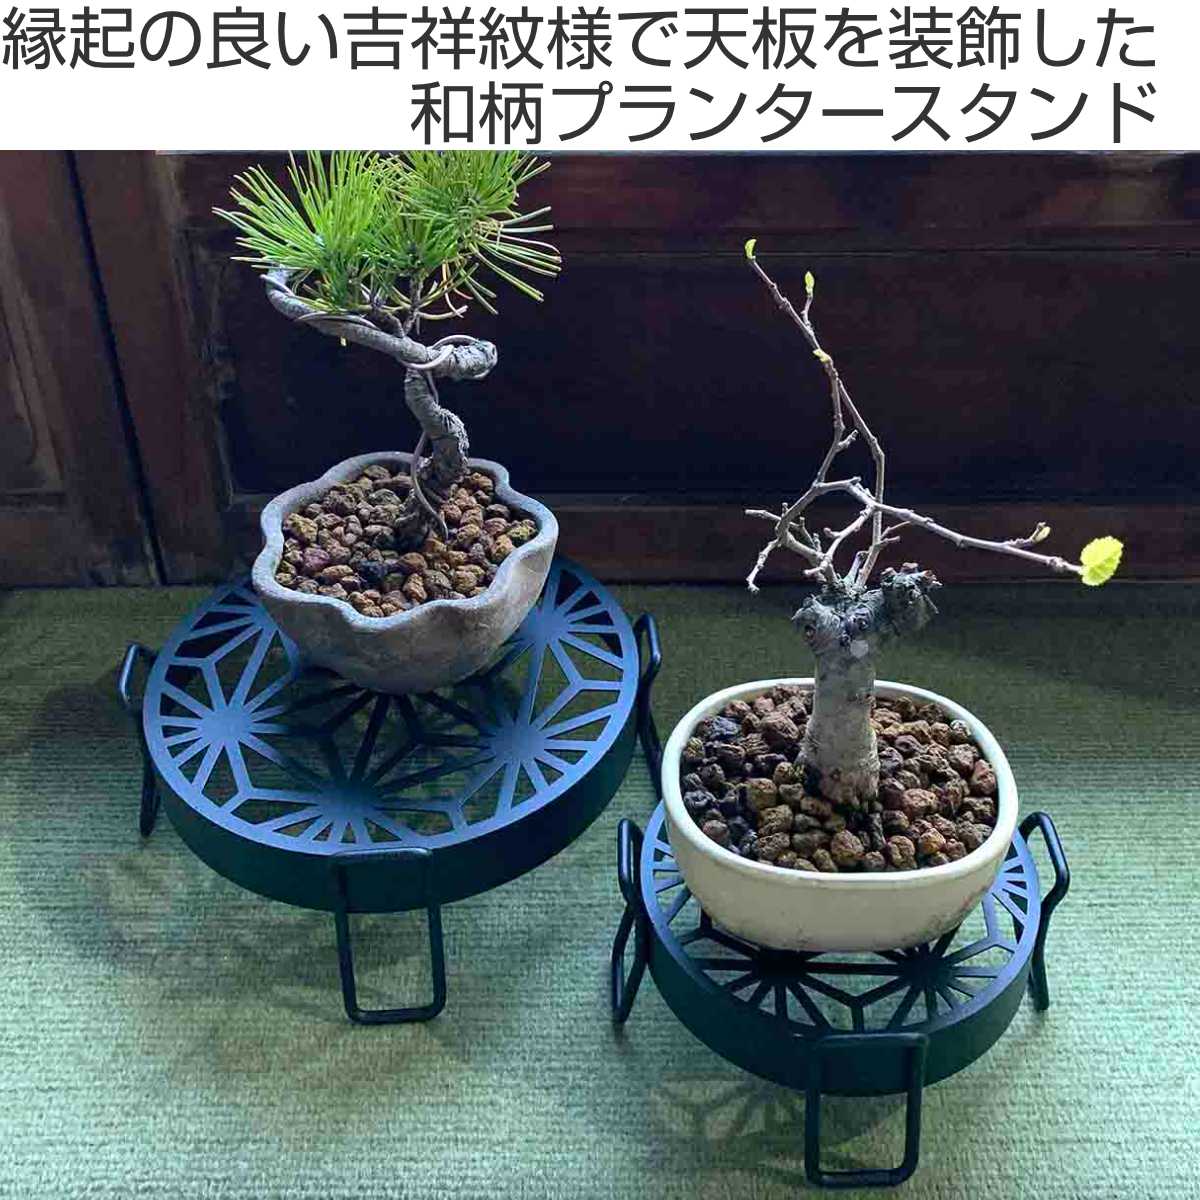 盆栽、観葉植物の台 - インテリア雑貨/小物